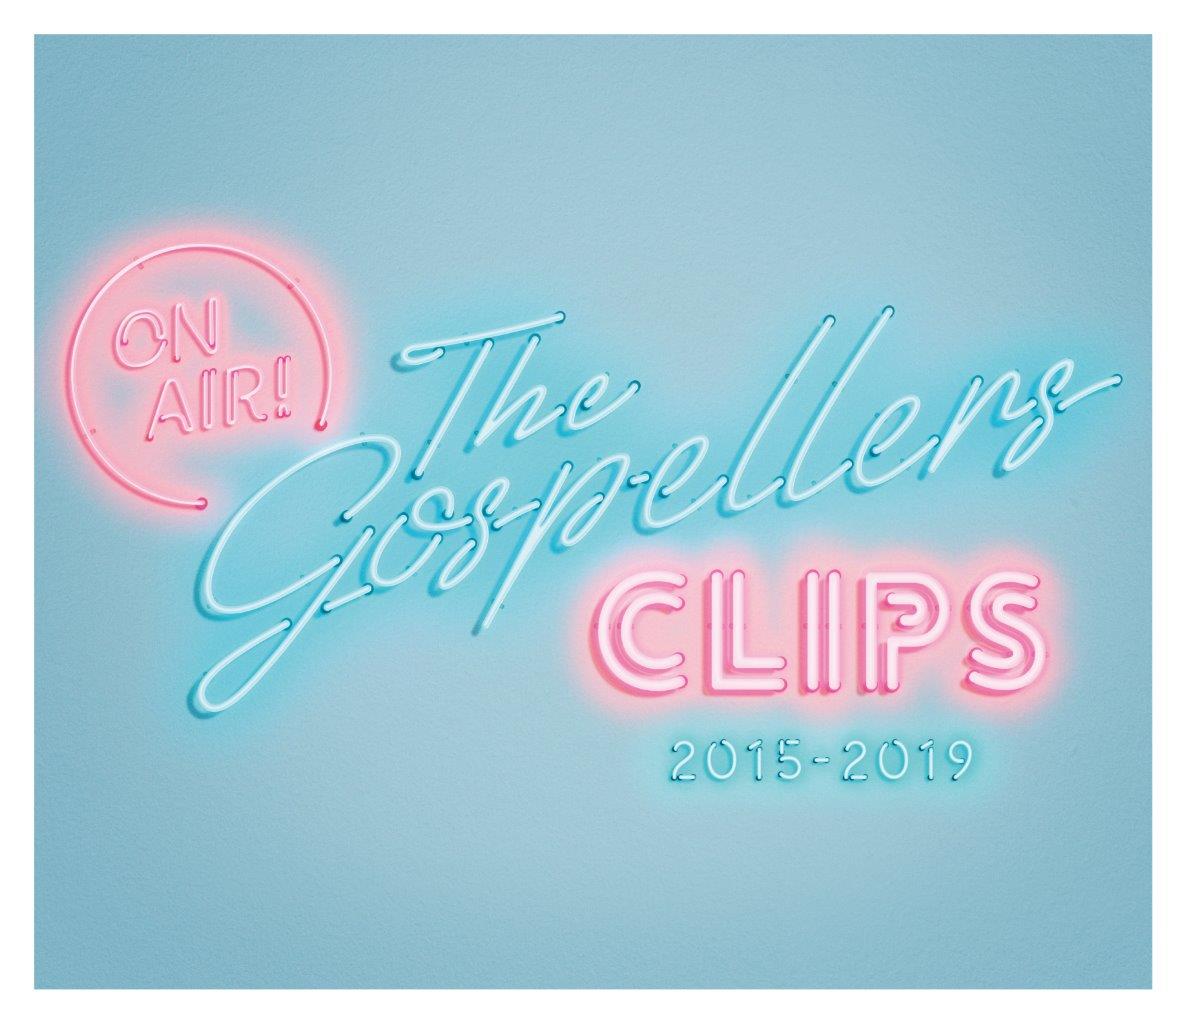 ゴスペラーズのミュージック ビデオコレクション The Gospellers Clips 15 19 が 7月29日に発売 15年の Dream Girl から最新シングル Voxers まで5年間の全9曲を収録 Music Guide ミュージックガイド